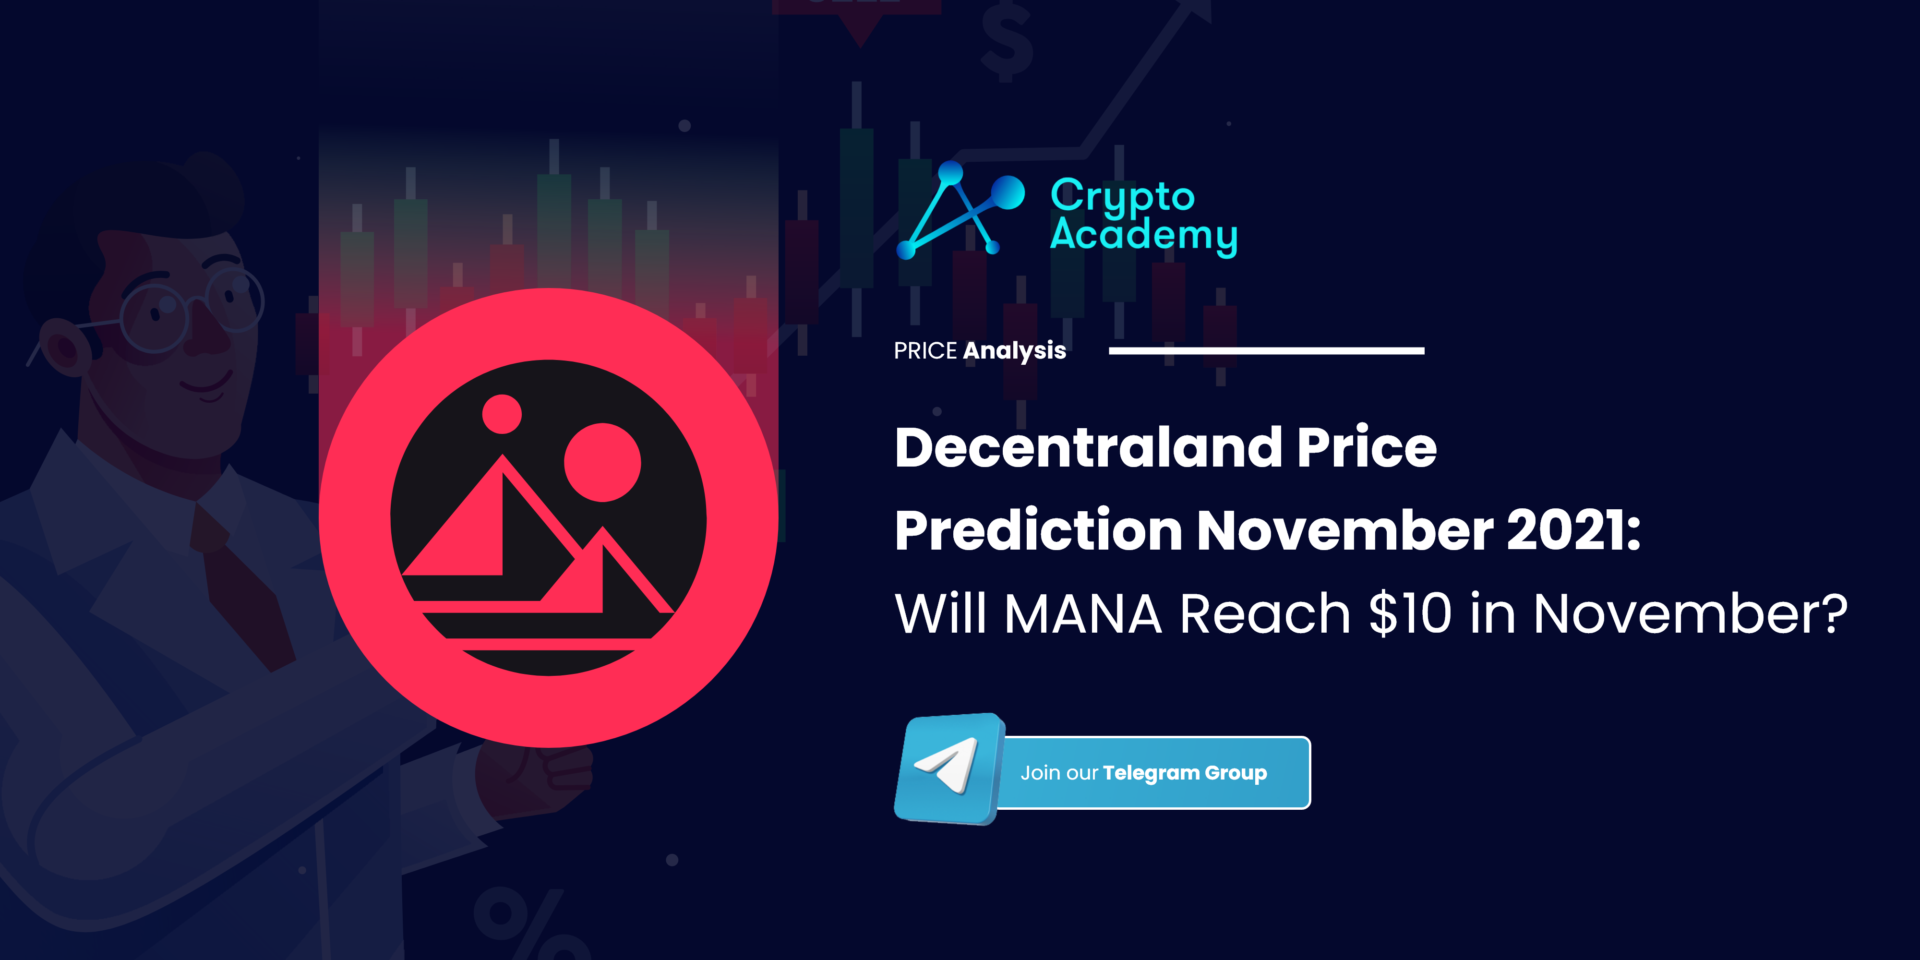 Decentraland Price Prediction November 2021: Will MANA Reach $10 in November?